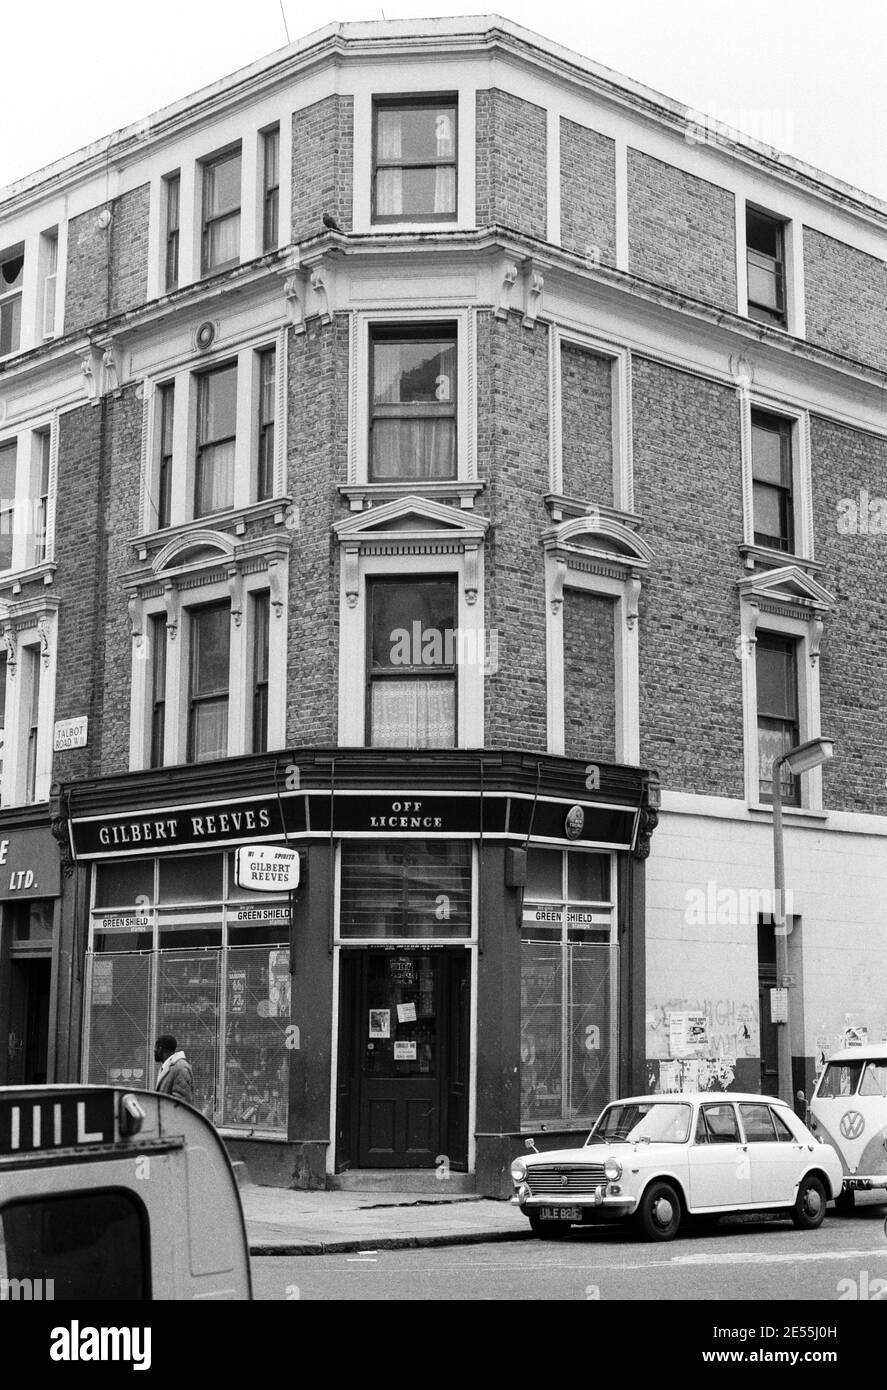 Großbritannien, West London, Notting Hill, 1973. Heruntergekommene und heruntergekommene, große, vierstöckige Häuser werden langsam restauriert und neu dekoriert. Ein Geschäft mit Lizenz an der Ecke Talbot Road (links) und Powis Square (rechts). Stockfoto